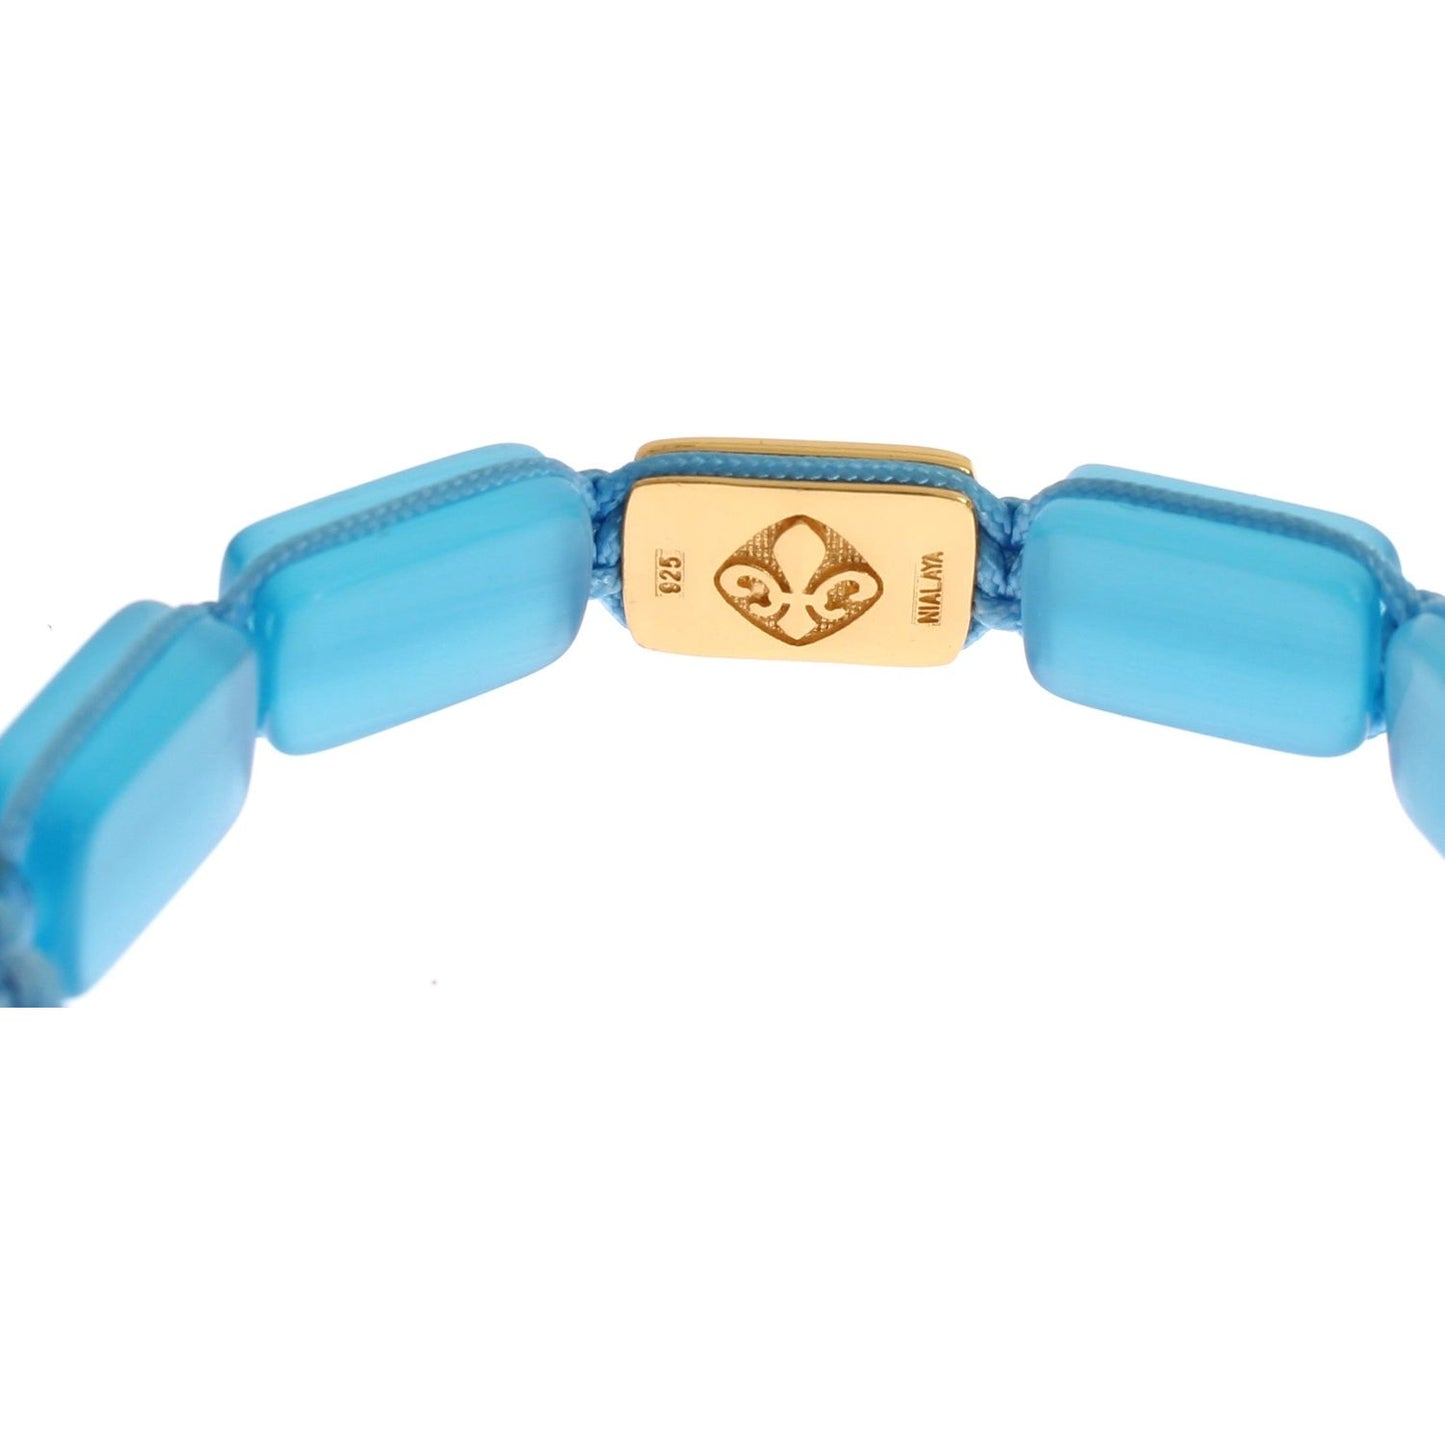 Nialaya Elegant Blue Opal & Diamond-Studded Bracelet cz-opal-18k-gold-925-bracelet